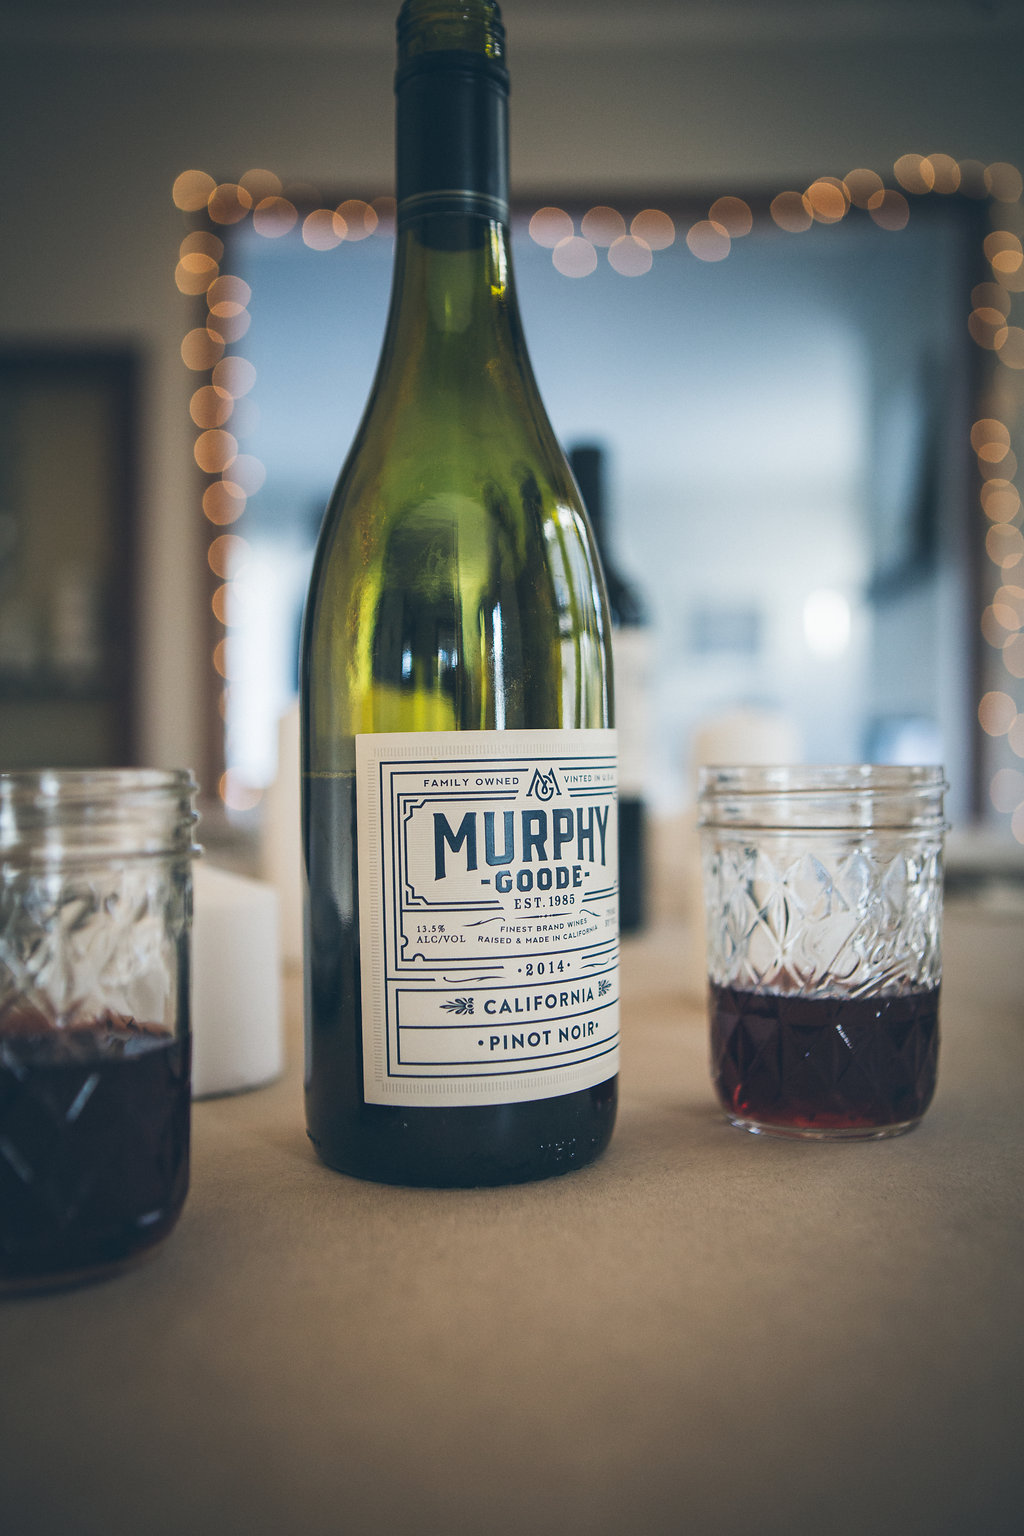 Murphy-Goode Winery Pinot Noir 2014